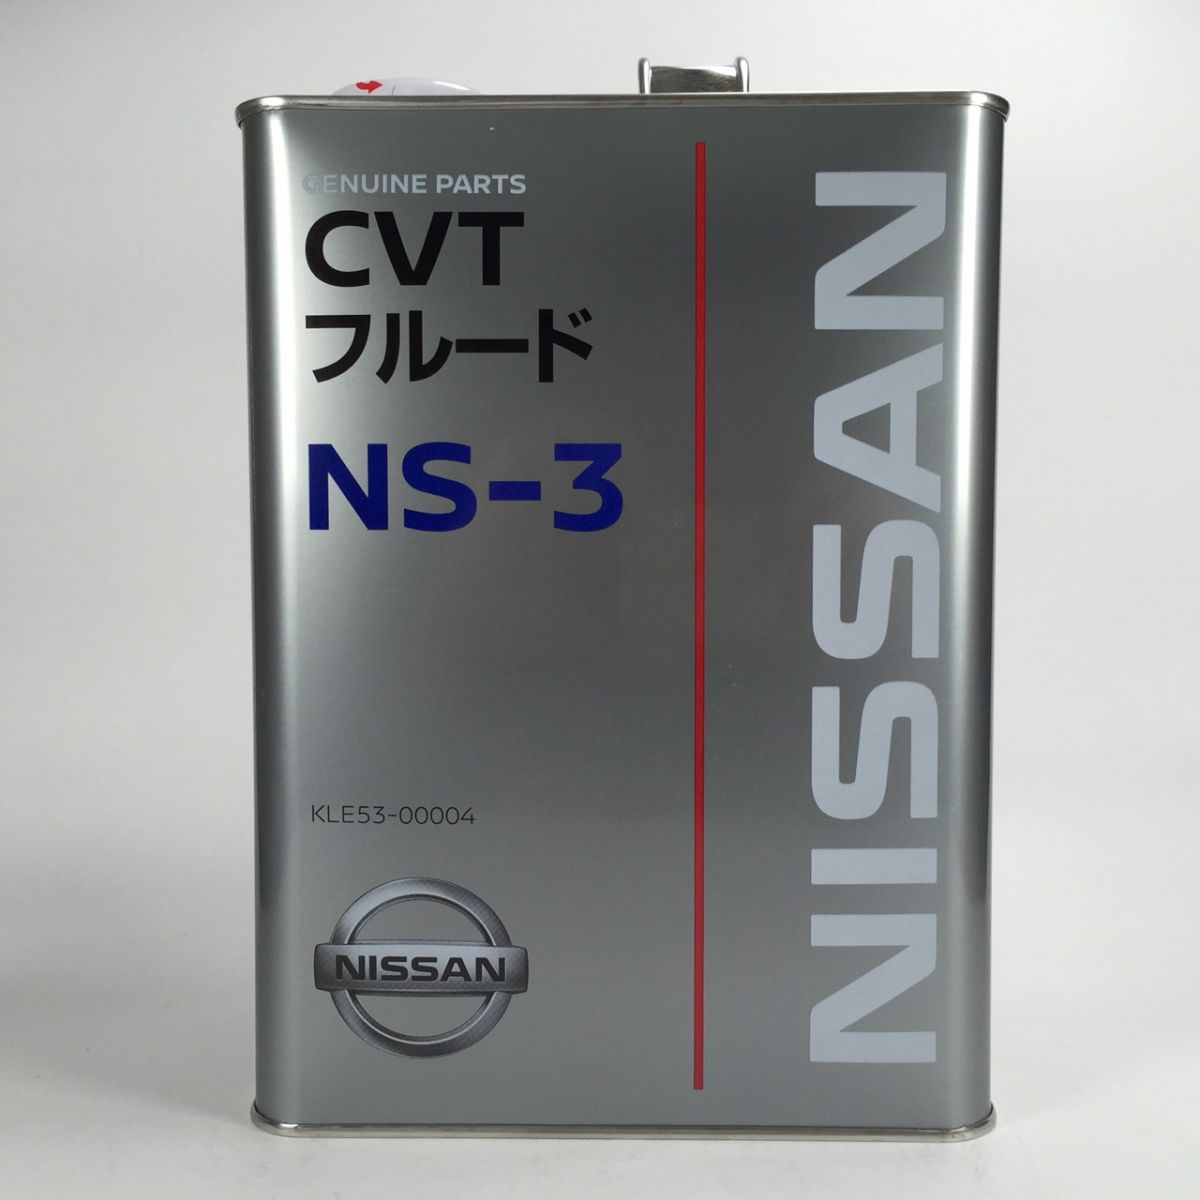 Масло трансмиссионное nissan cvt. Nissan CVT NS-3. Nissan CVT NS-3 4л. Kle53-00004. Nissan ns3. Трансмиссионное масло Nissan NS-3 CVT Fluid.